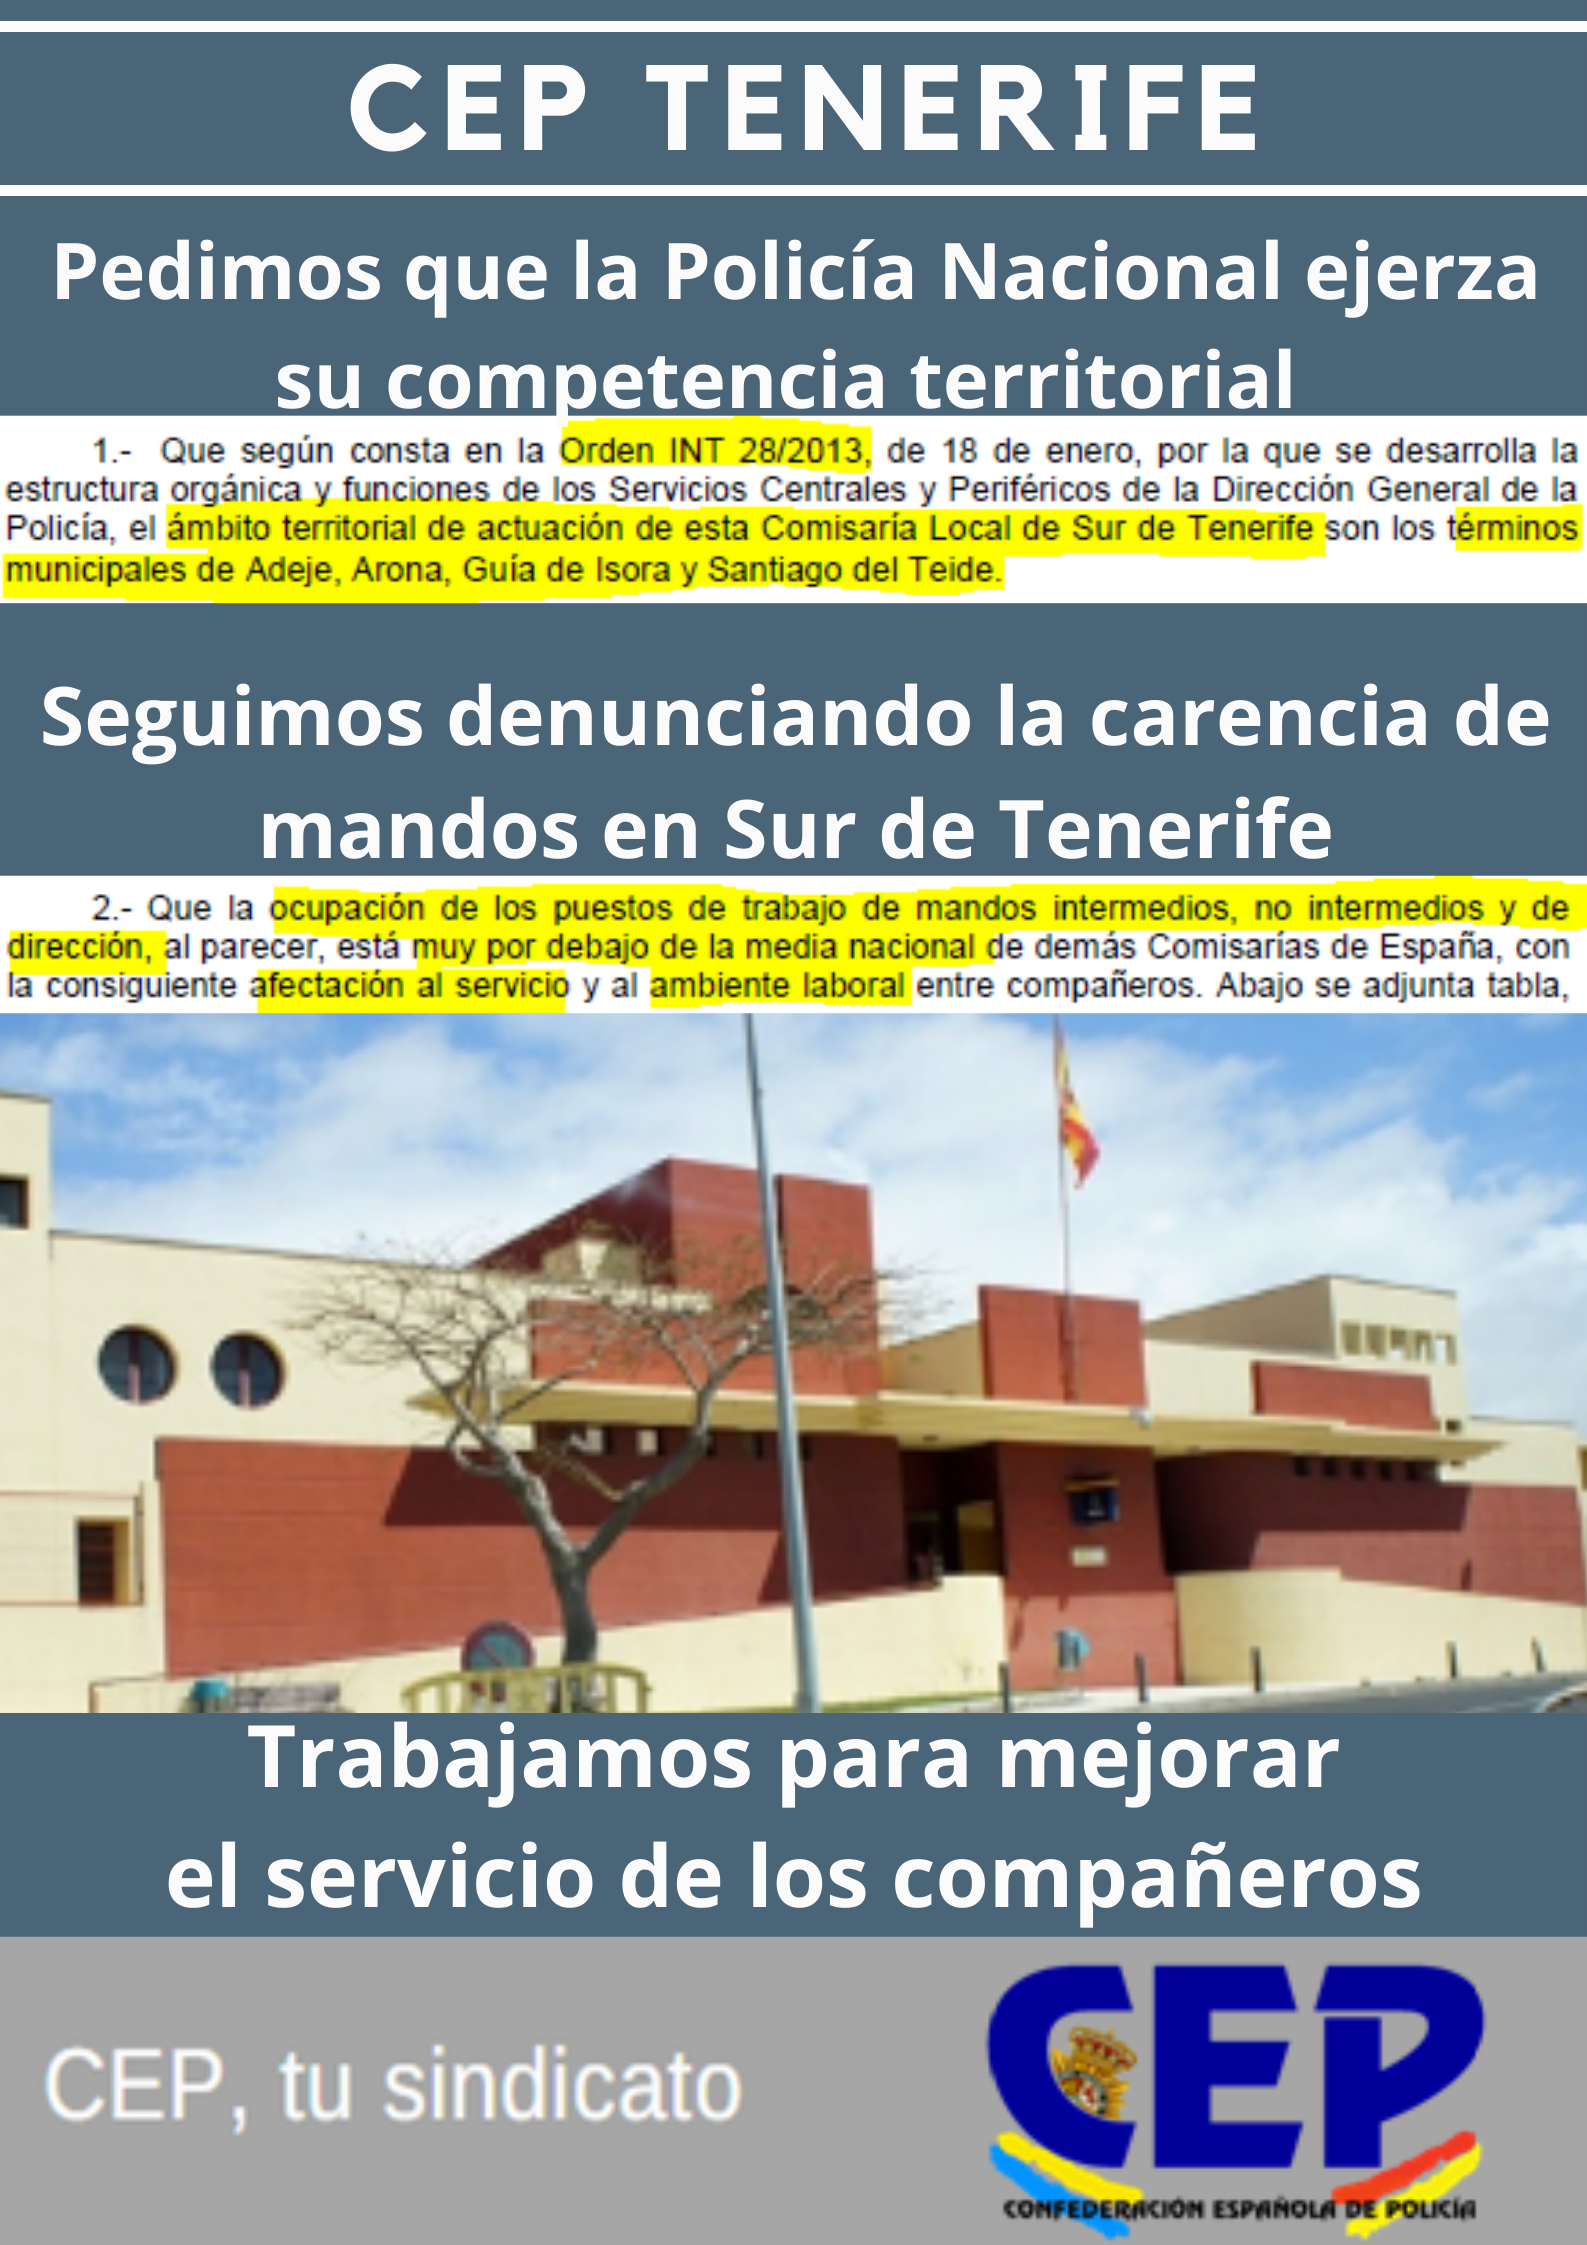 Pedimos que PN ejerza su competencia territorial y seguimos denunciando carencia de mandos en Sur de Tenerife